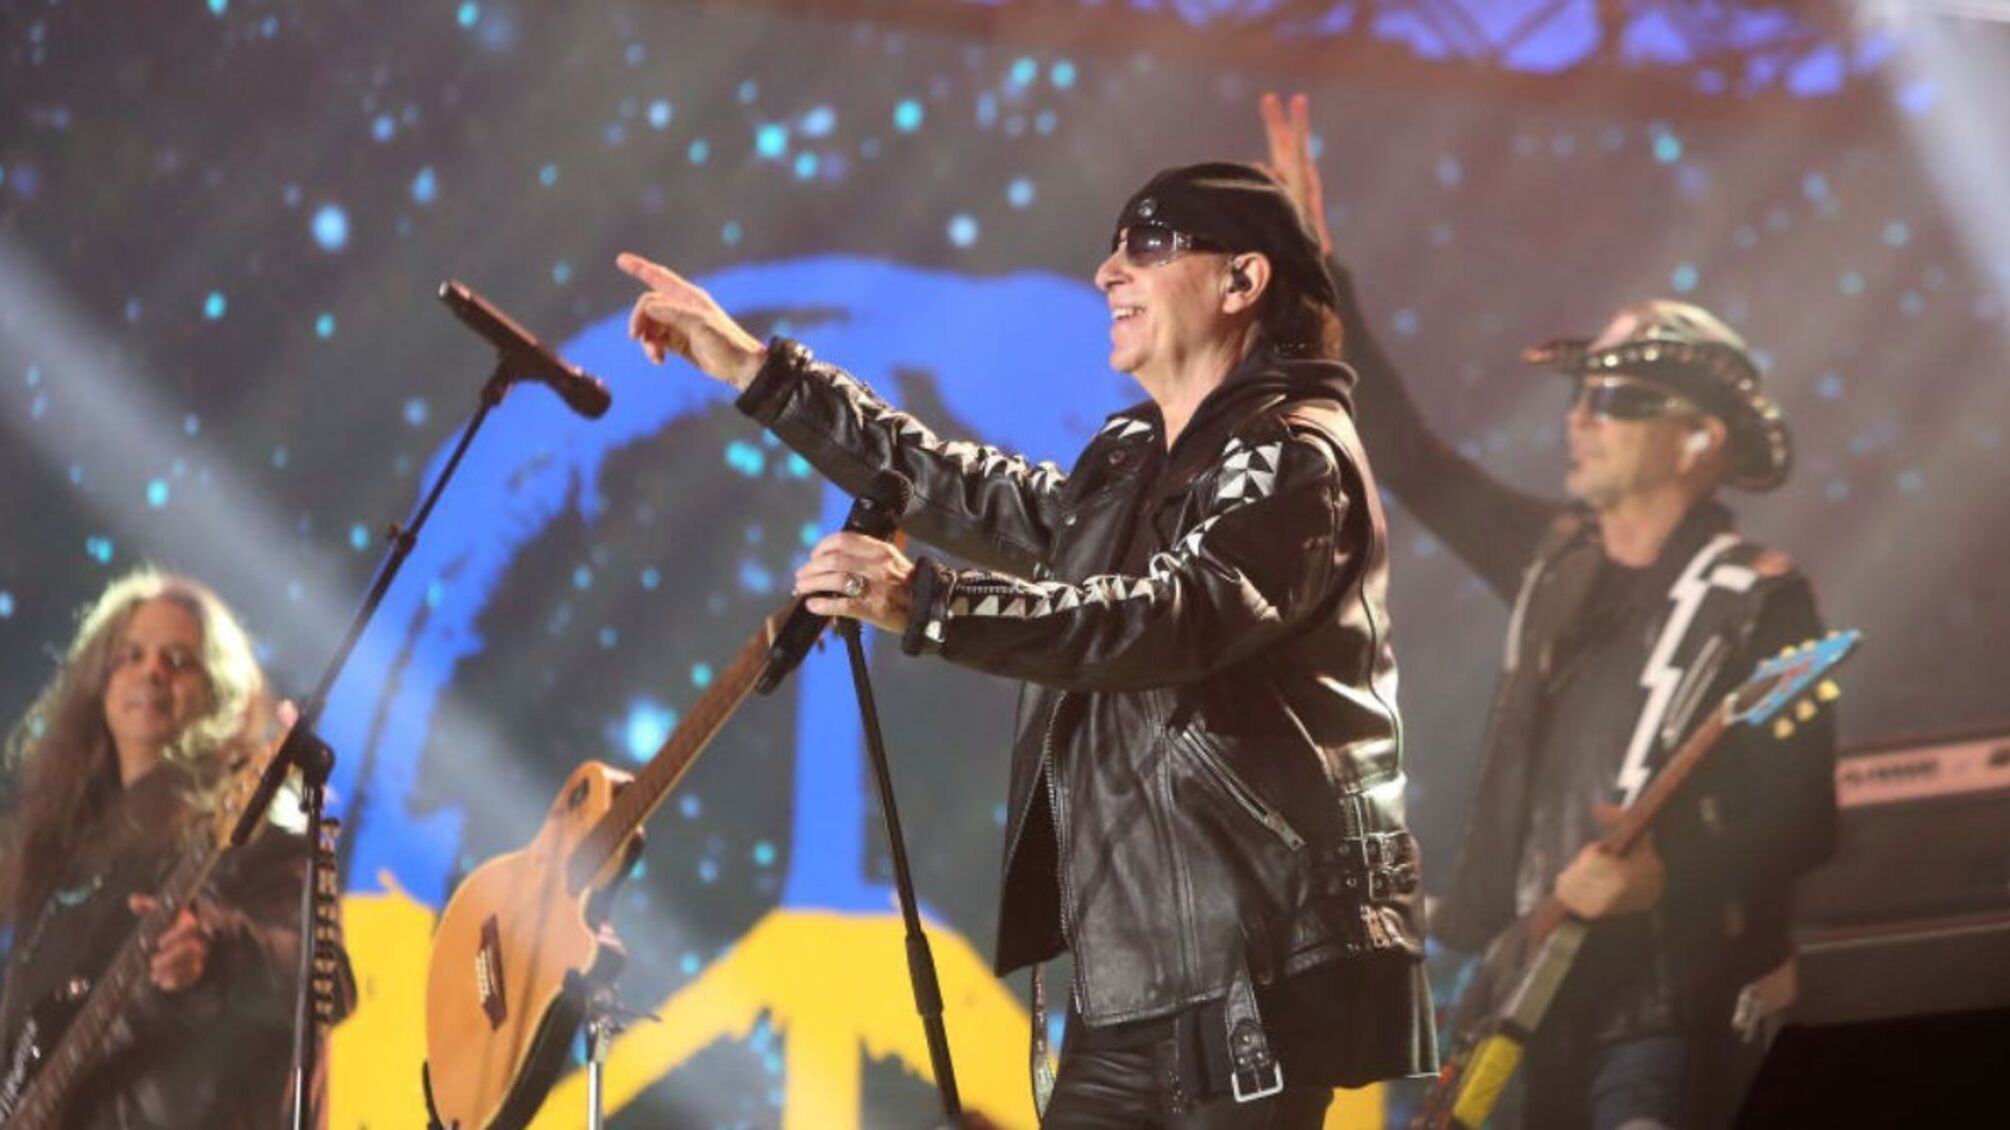 Легендарная группа Scorpions на концерте в Берлине подняла флаг Украины (фото)